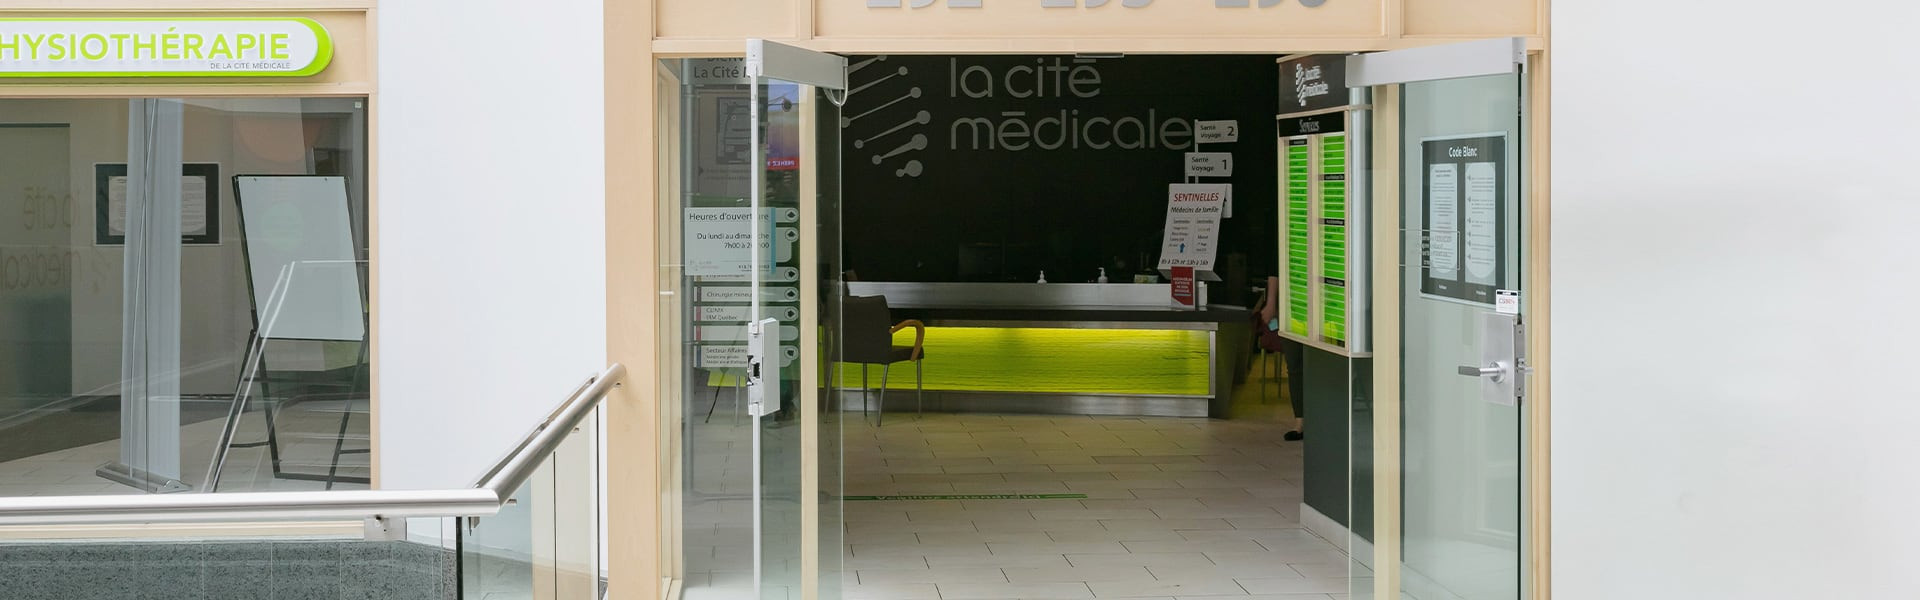 La Cité Médicale – Santé voyage | Place de la Cité